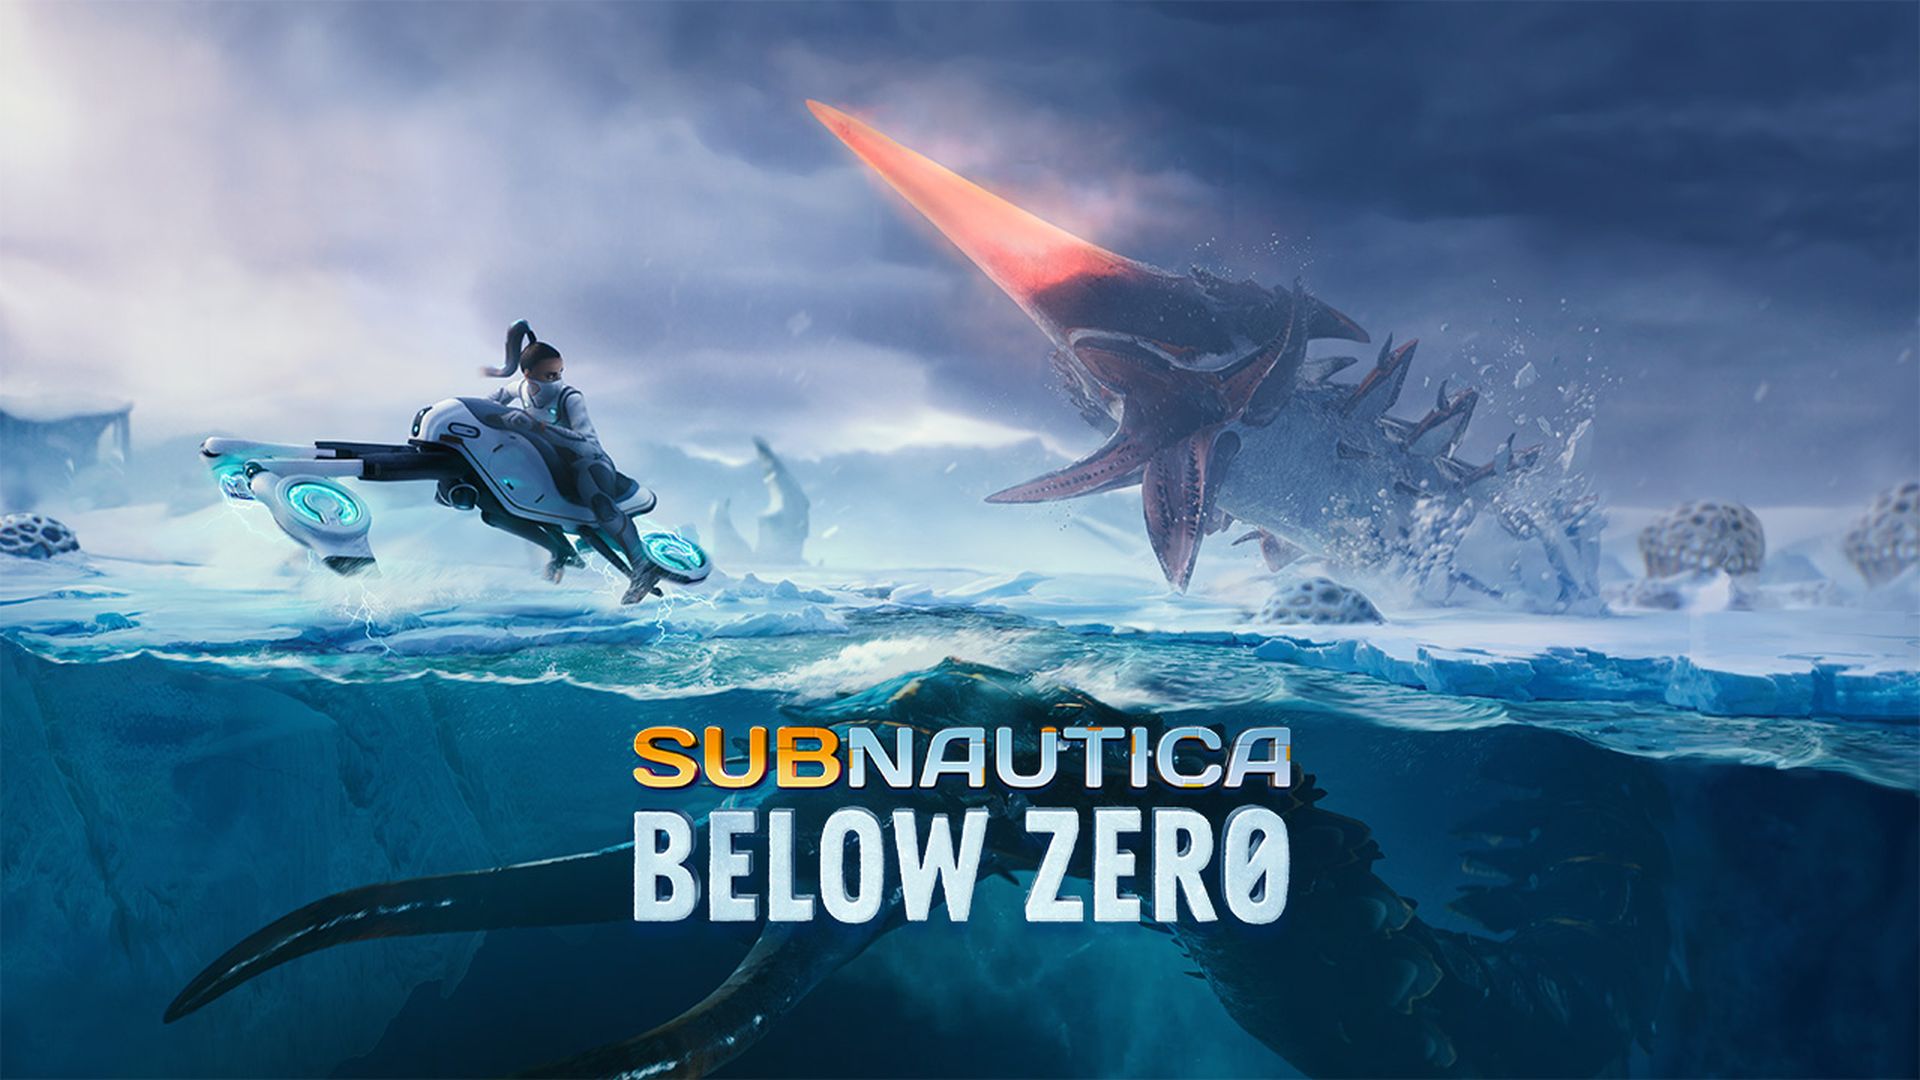 subnautica game